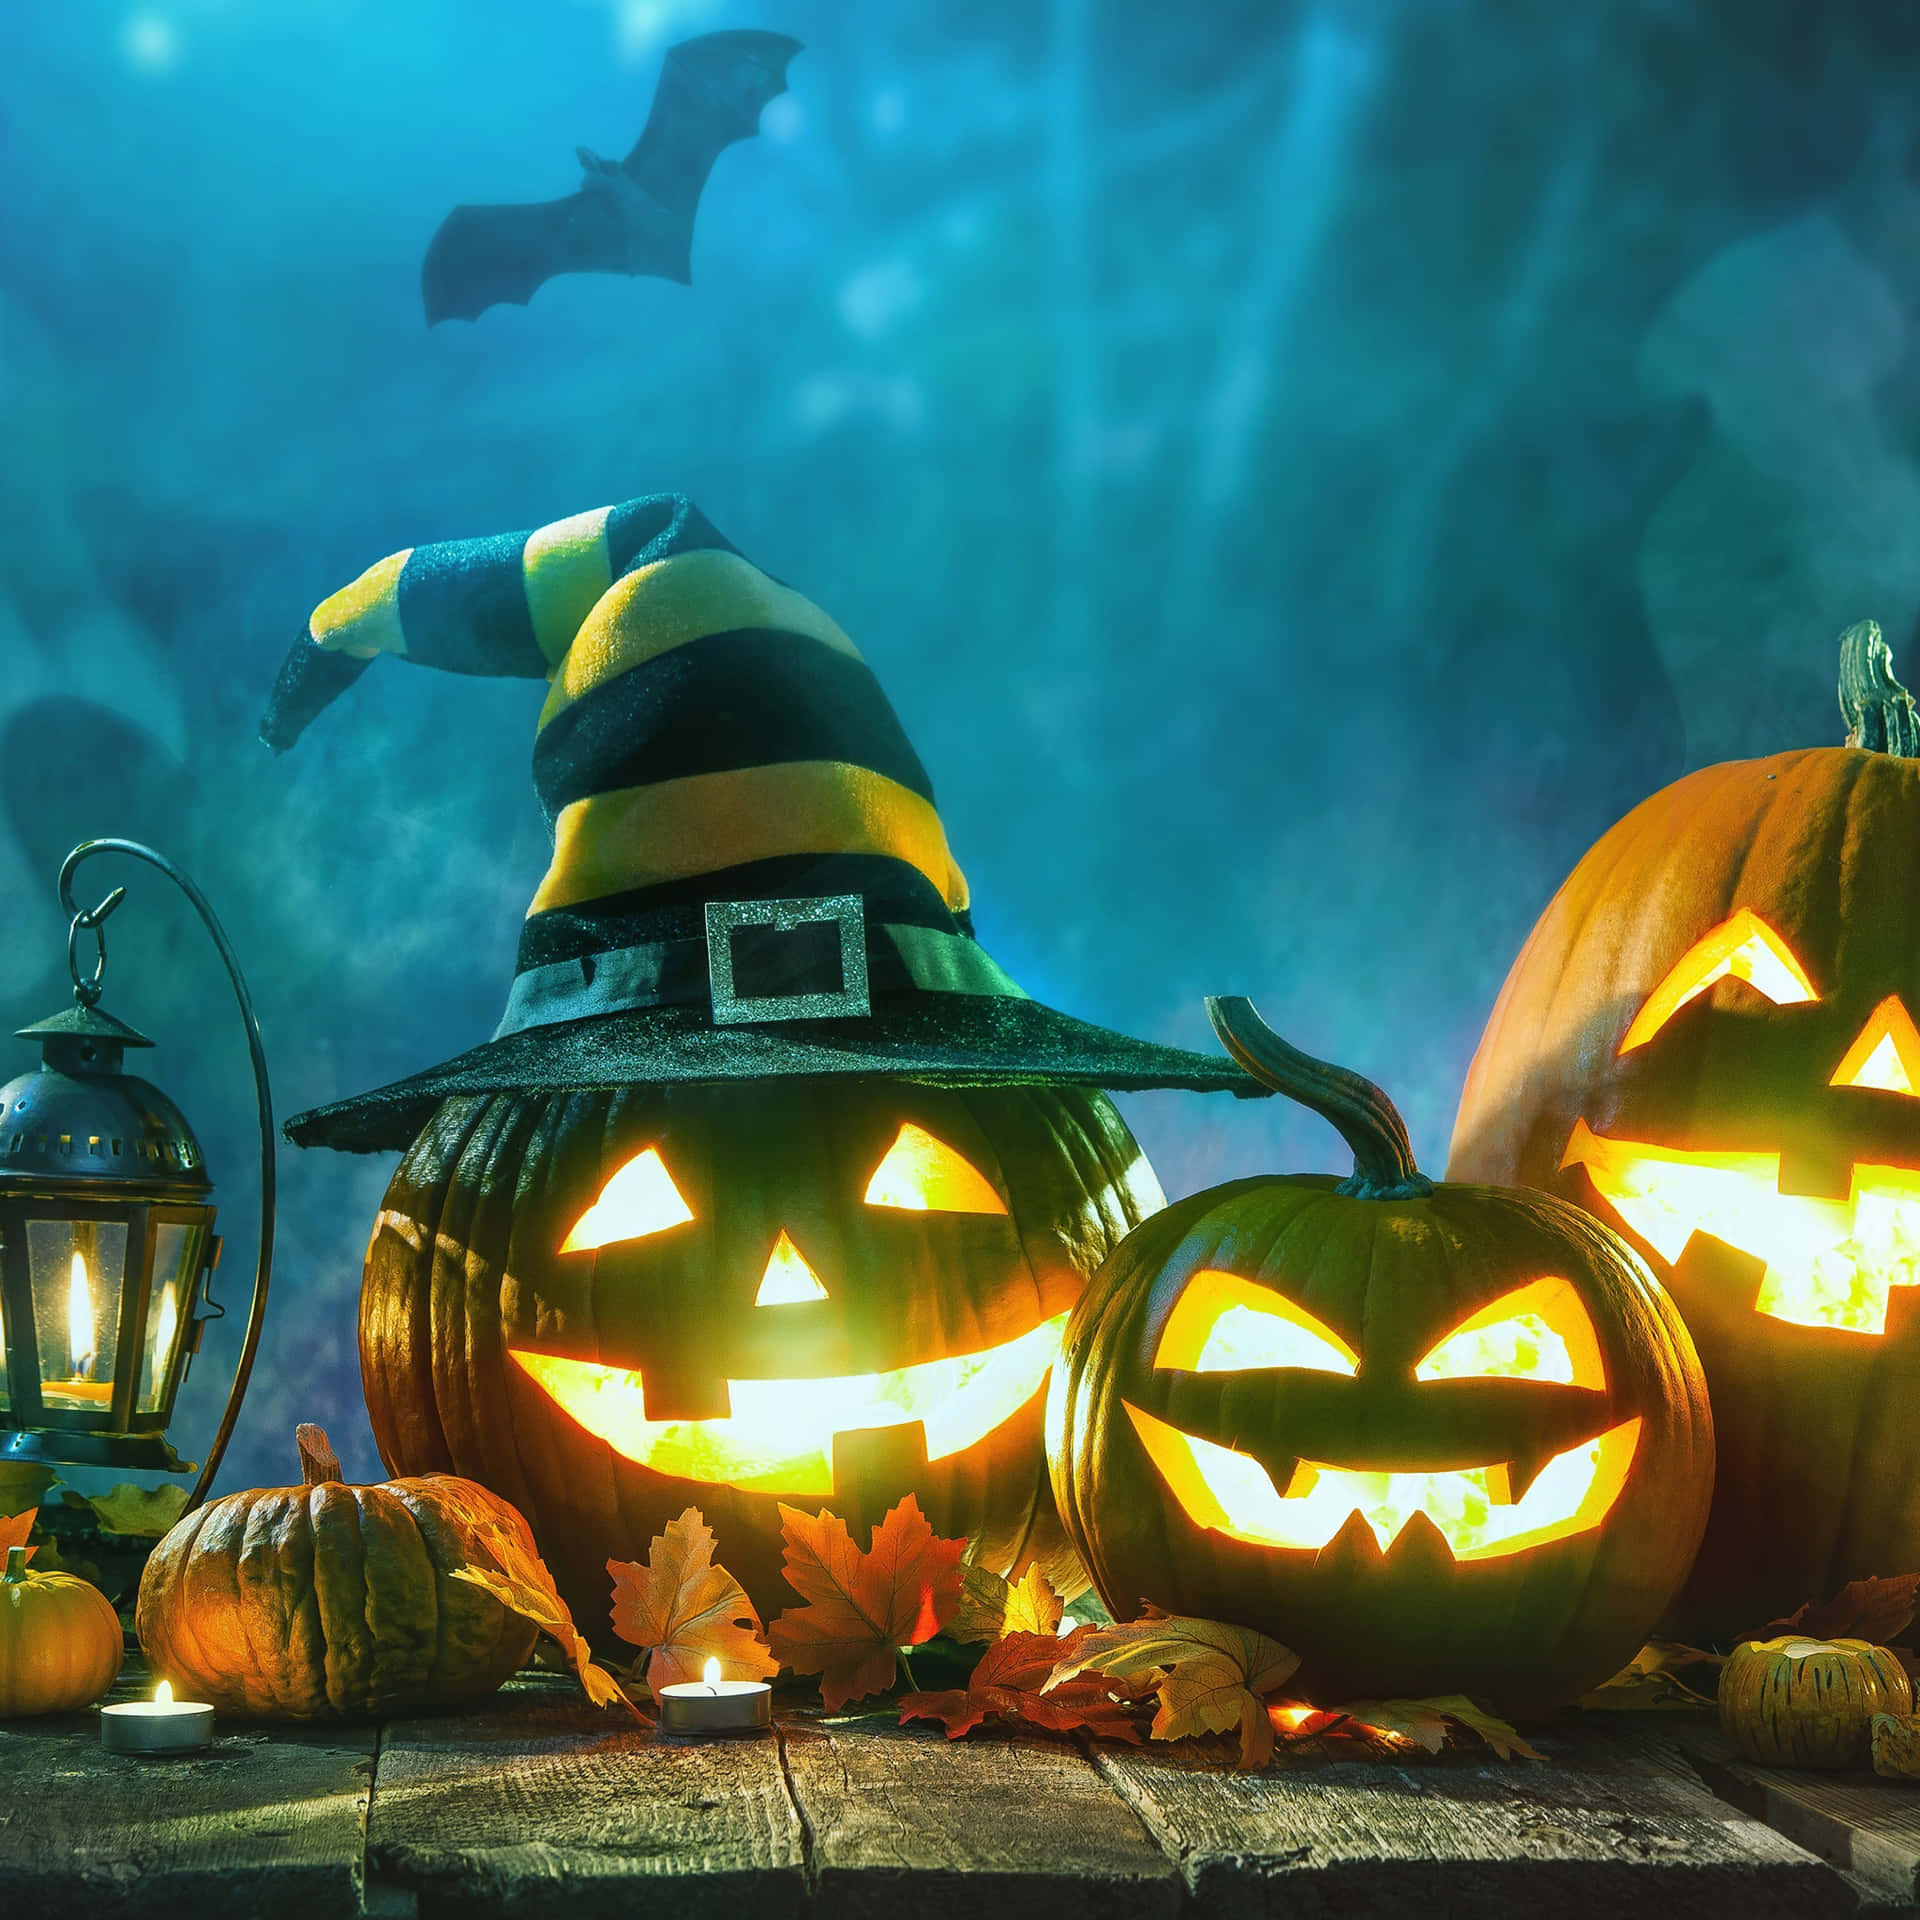 Spooky Halloween Fun